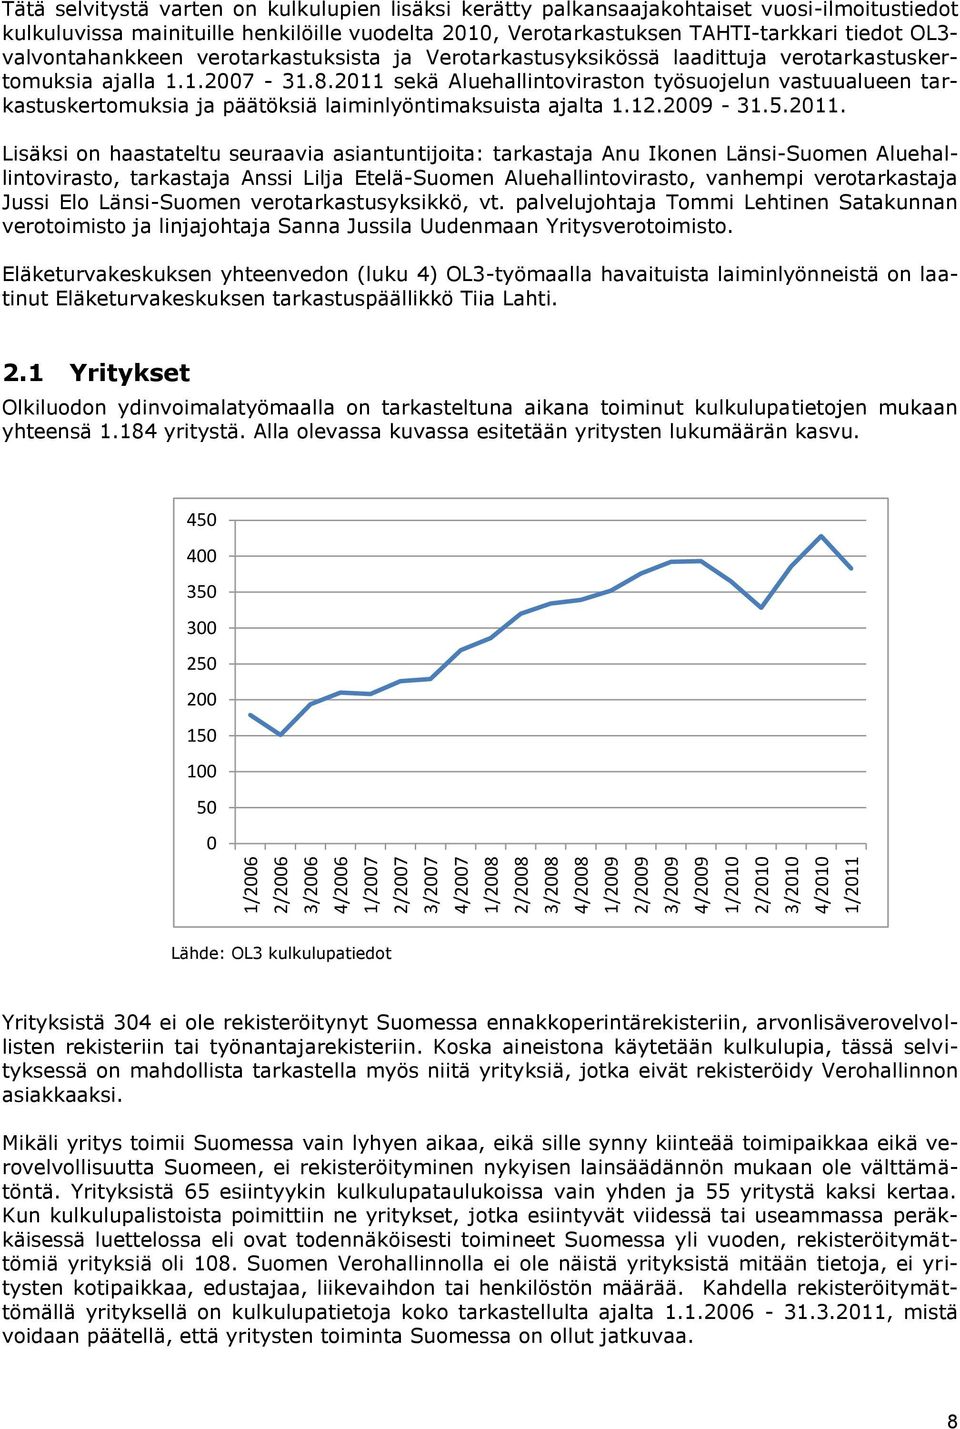 Verotarkastusyksikössä laadittuja verotarkastuskertomuksia ajalla 1.1.2007-31.8.